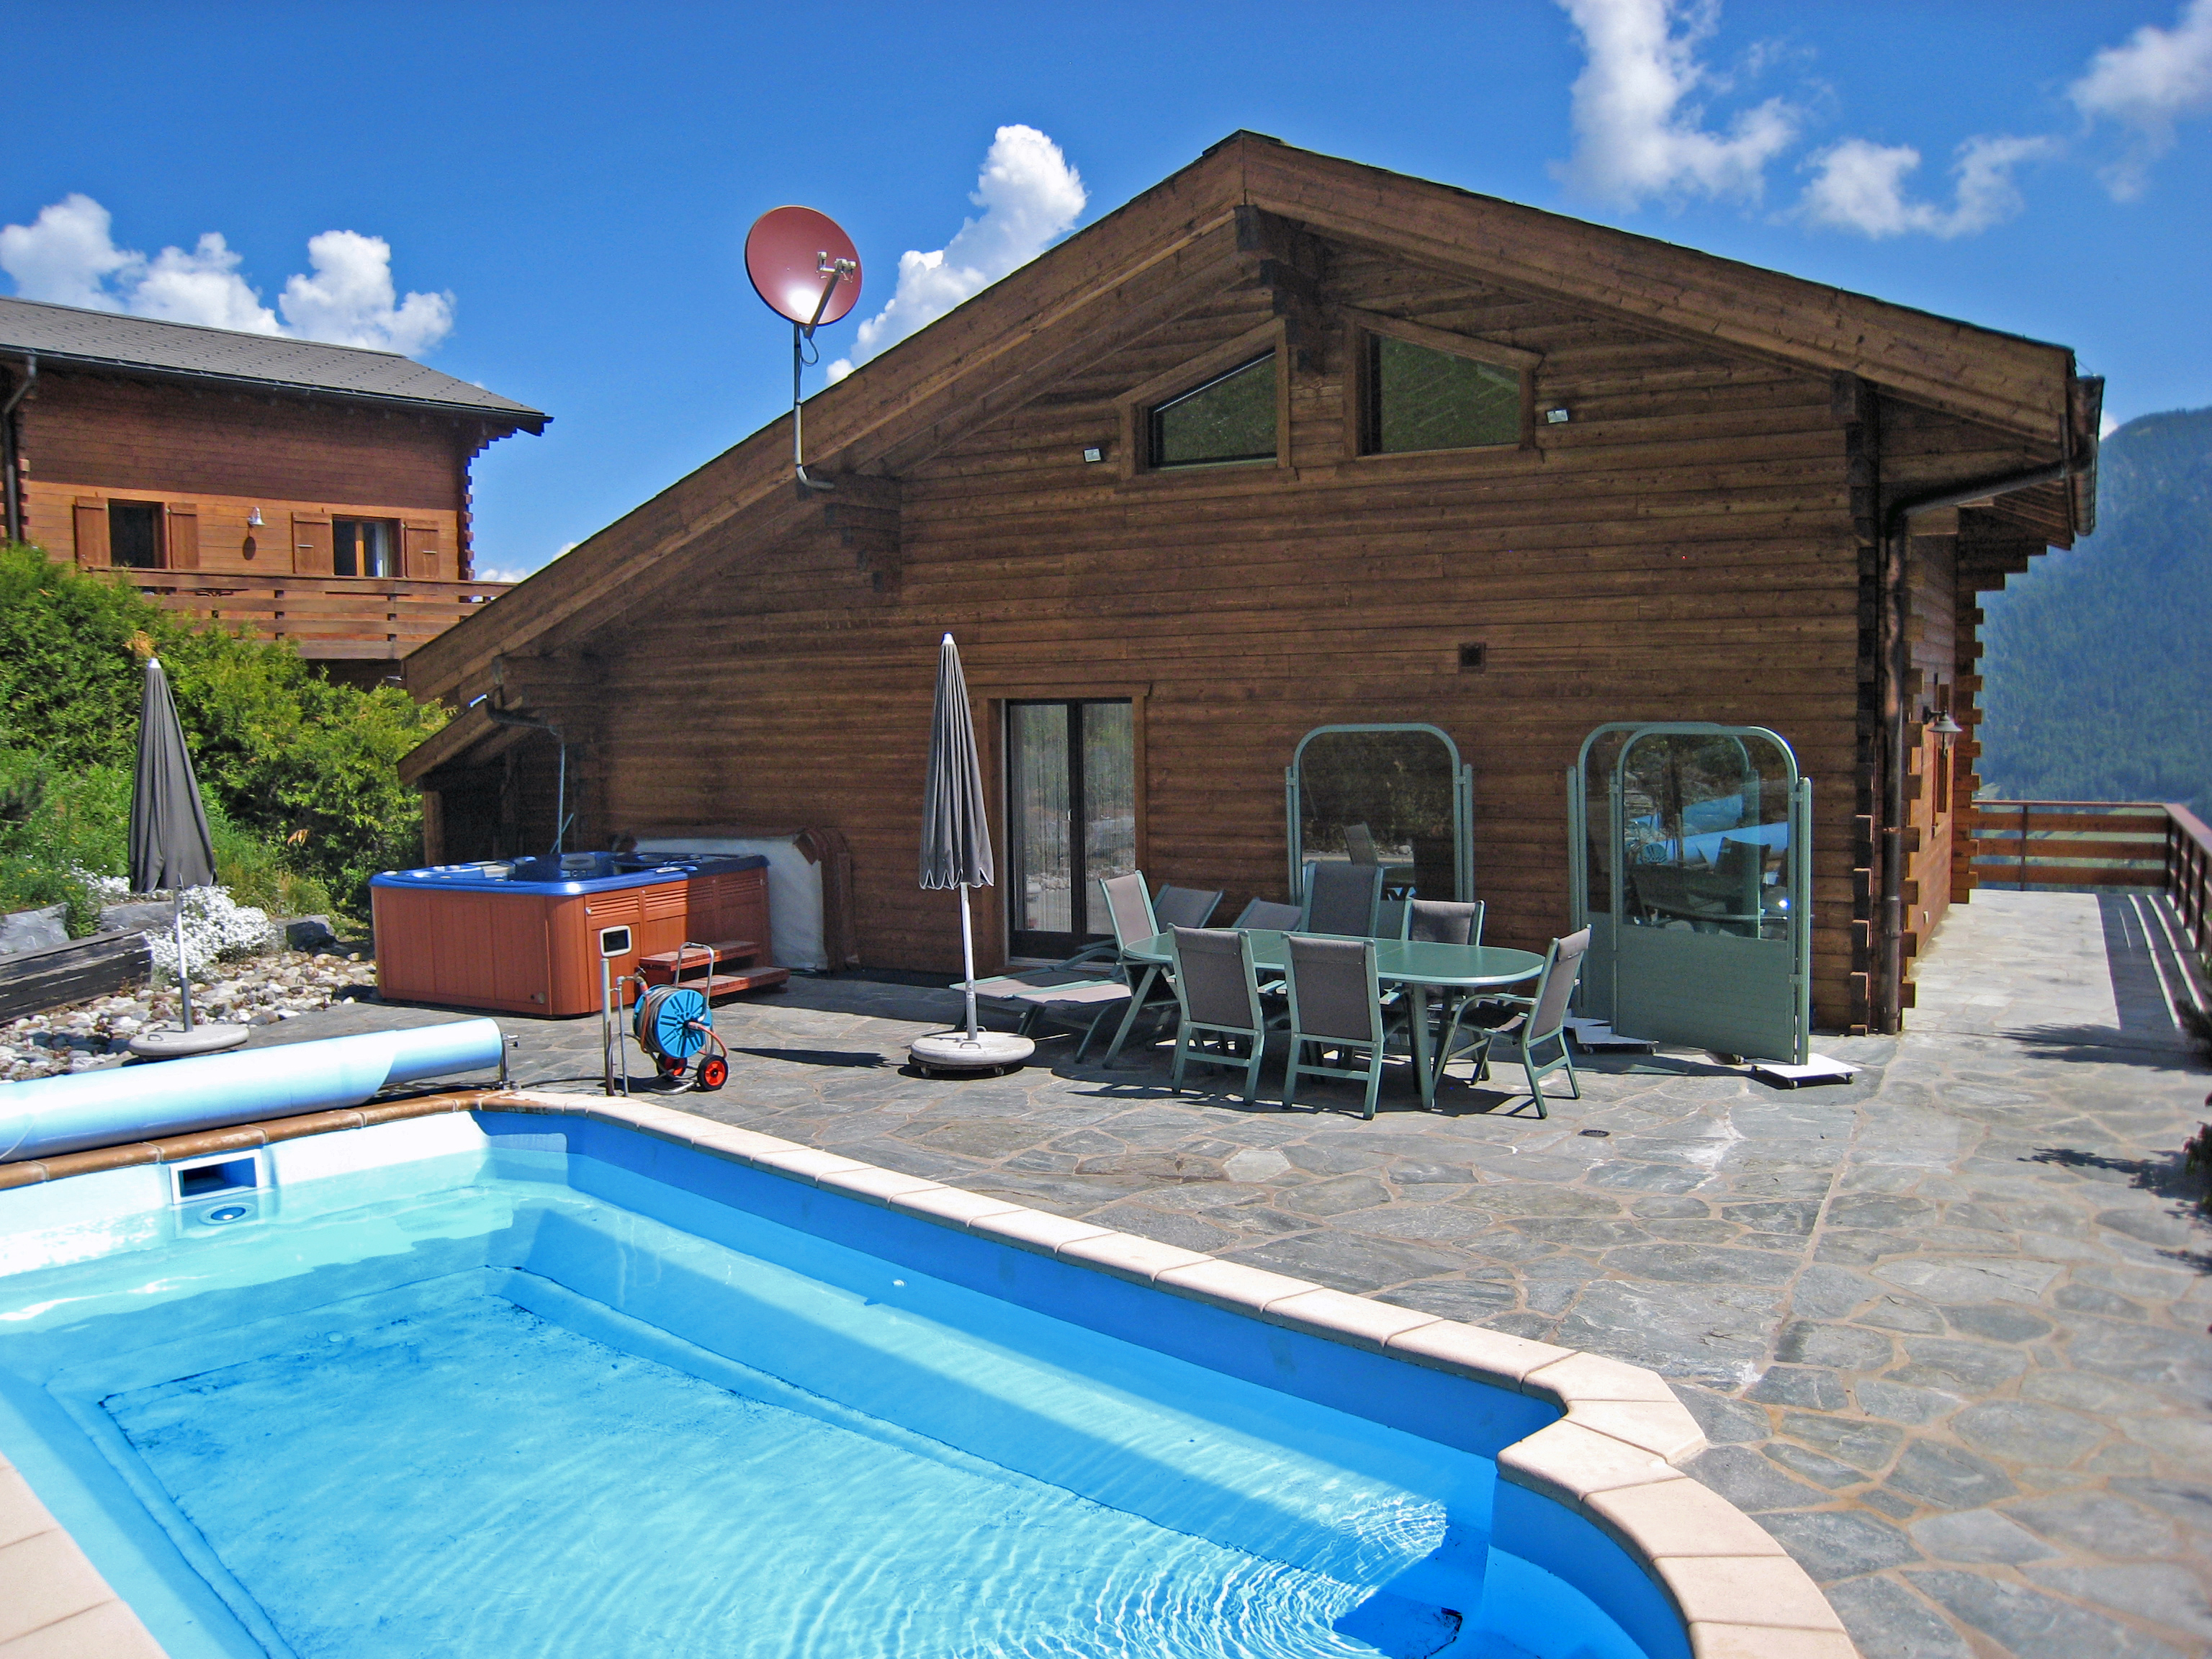 Vakantiehuis Chalet Coeur in La Tzoumaz, Zwitserland